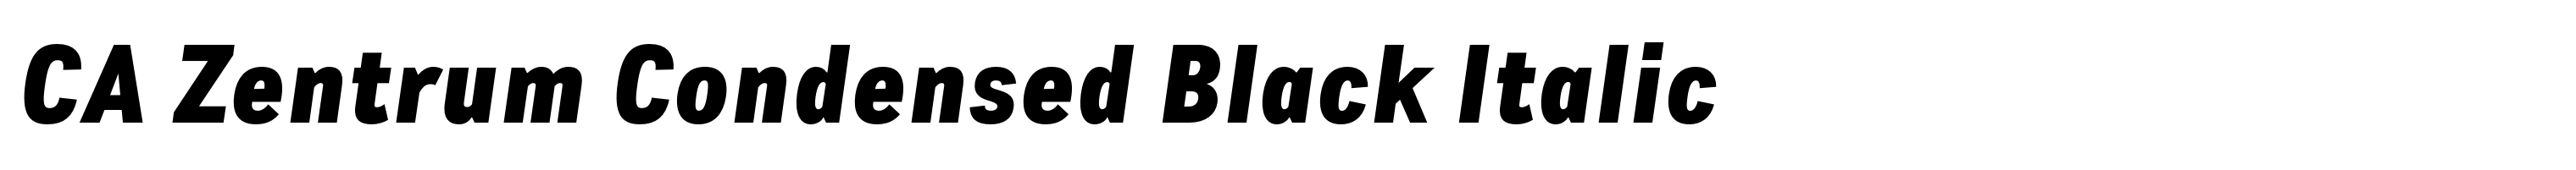 CA Zentrum Condensed Black Italic